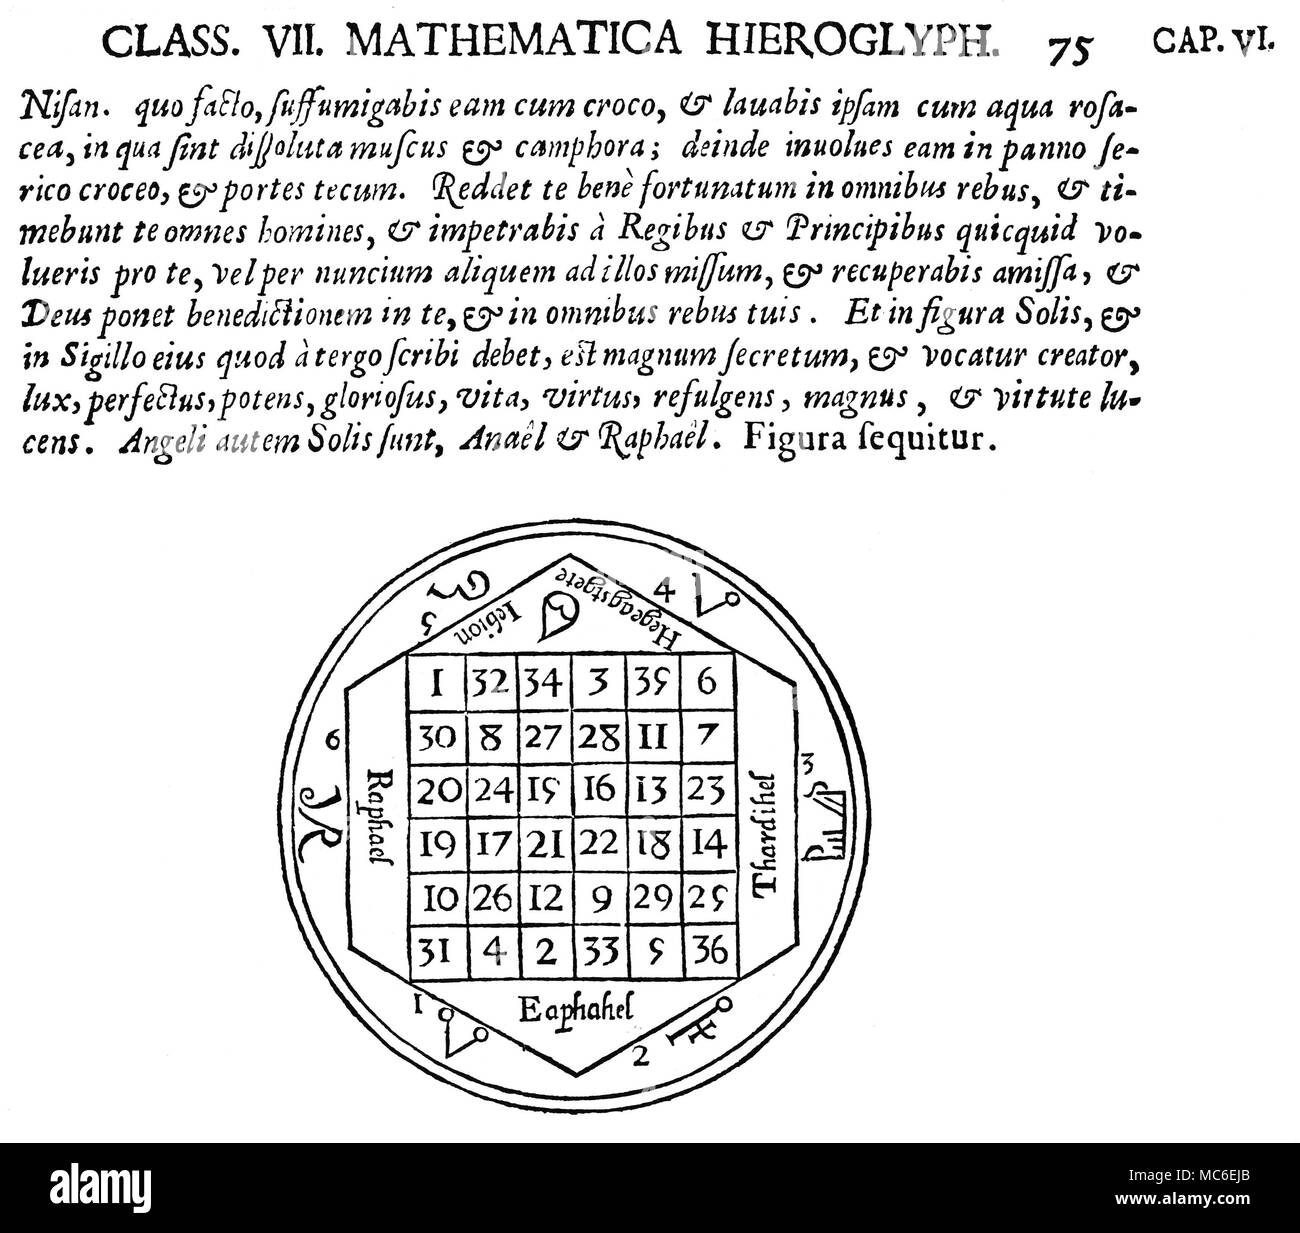 - Símbolos mágicos cuadrados mágicos - SUN La Tabula Solis, o cuadrado mágico del sol, sobre la base de un cuadrado de 6 x 6, la única adición lineal que es 111, en cualquier dirección. La plaza está rodeada por diversos nombres y sigils de ángeles y demonios relacionados con el Sol. De Athanasius Kircher, Oedipus Aegyptiacus, 1652-4. La estructura, y algunos del ángel lore, se deriva de los cuadrados mágicos publicado por Cornelio Agrippa. Foto de stock